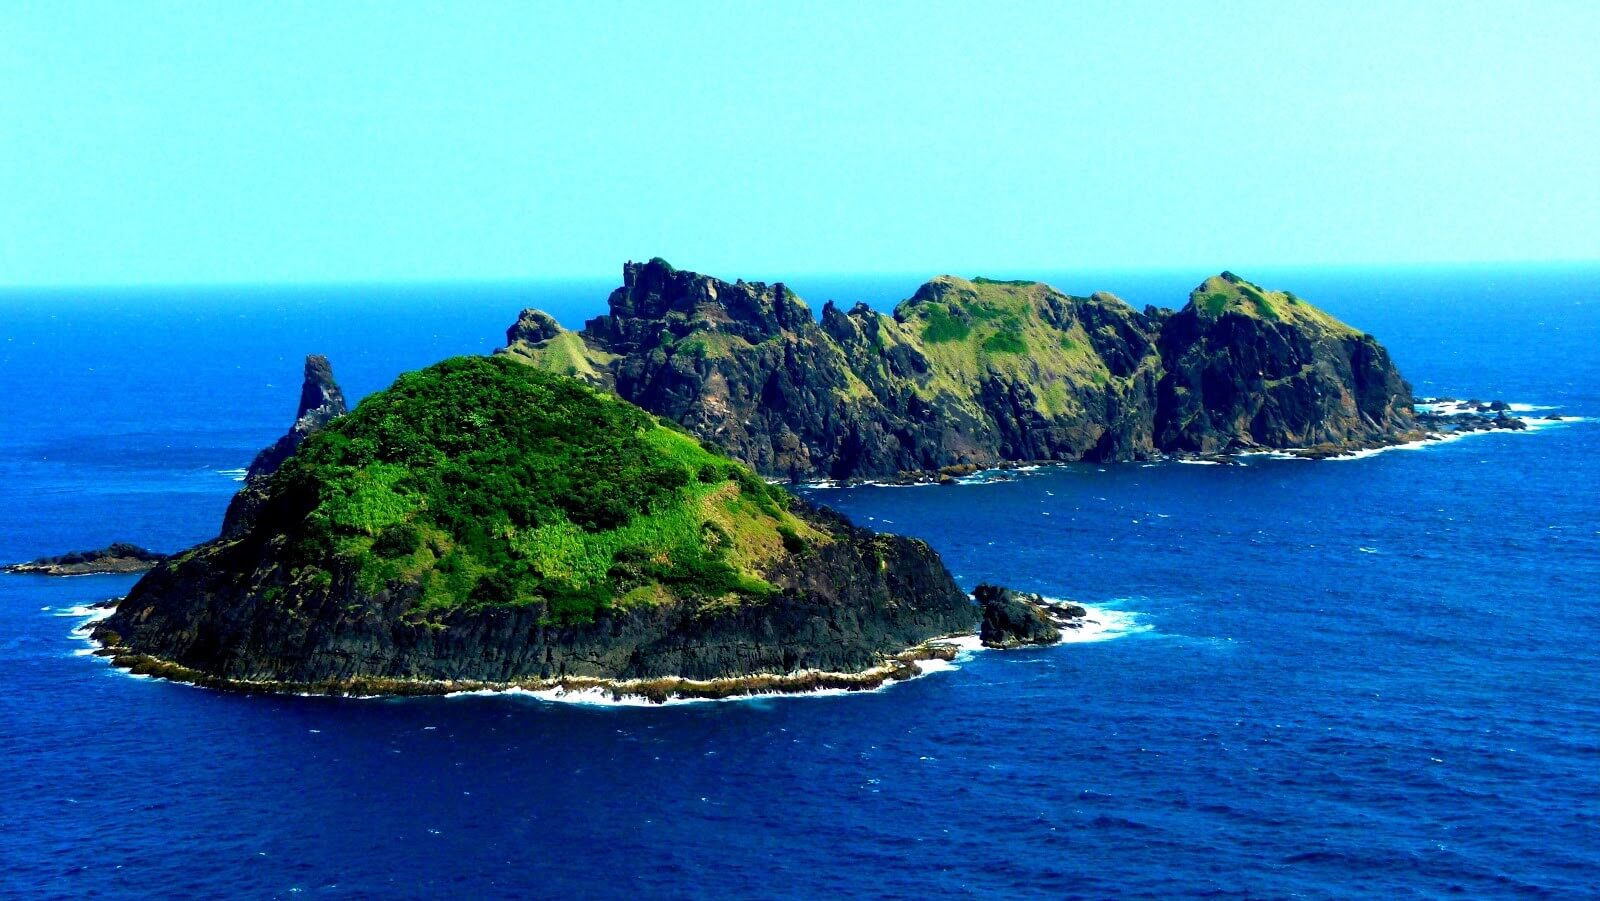 Palaui Island, Cagayan Valley